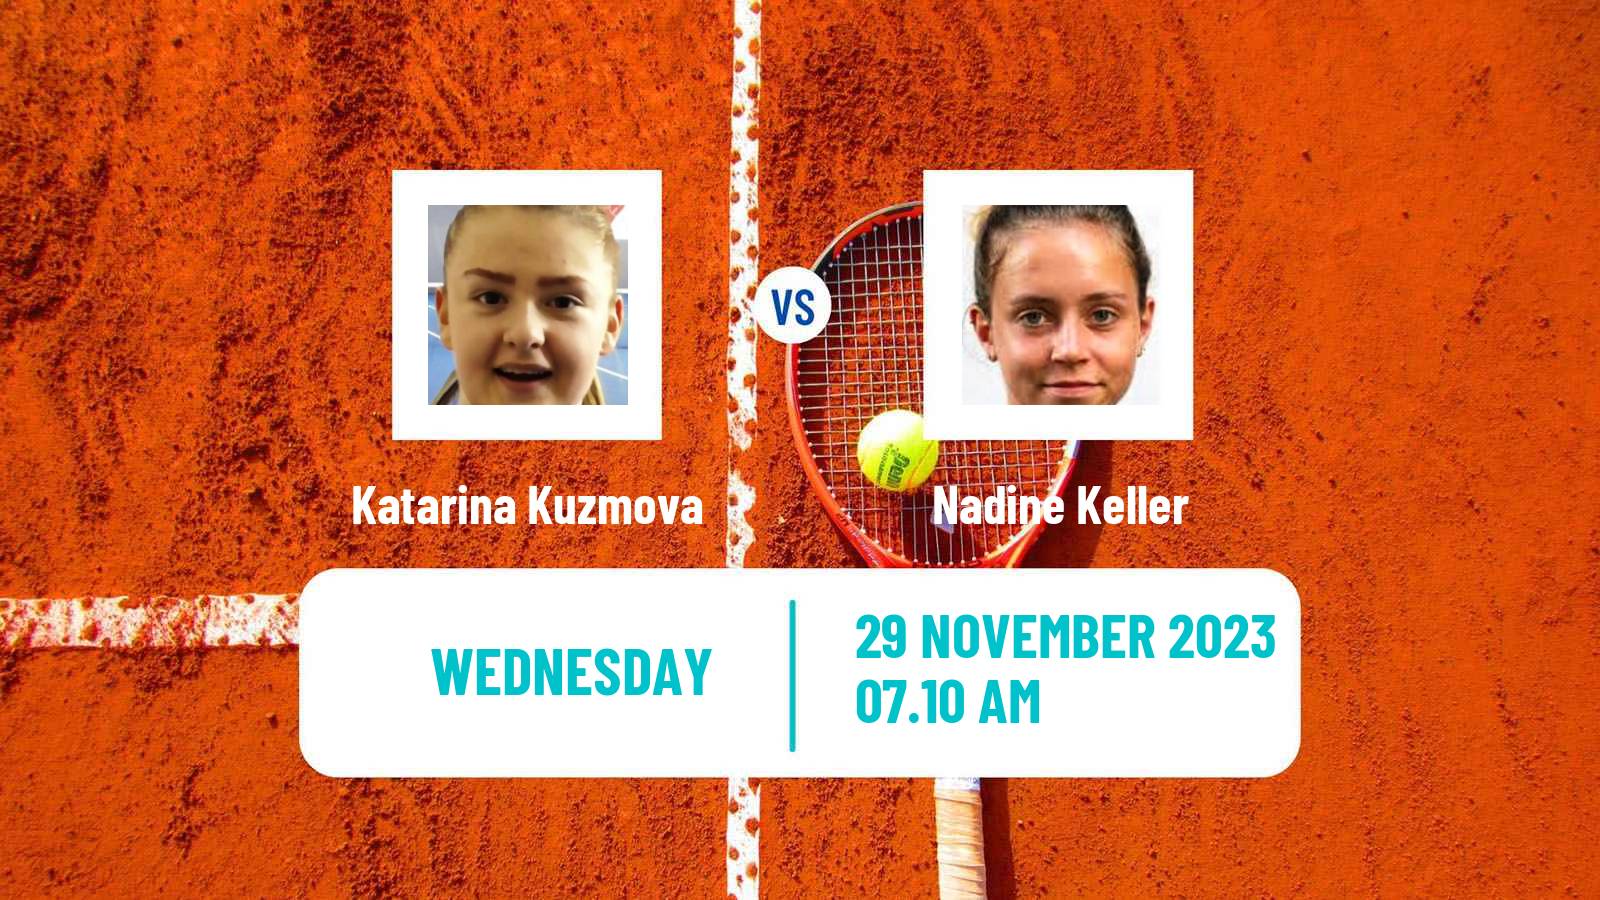 Tennis ITF W60 Trnava 3 Women Katarina Kuzmova - Nadine Keller